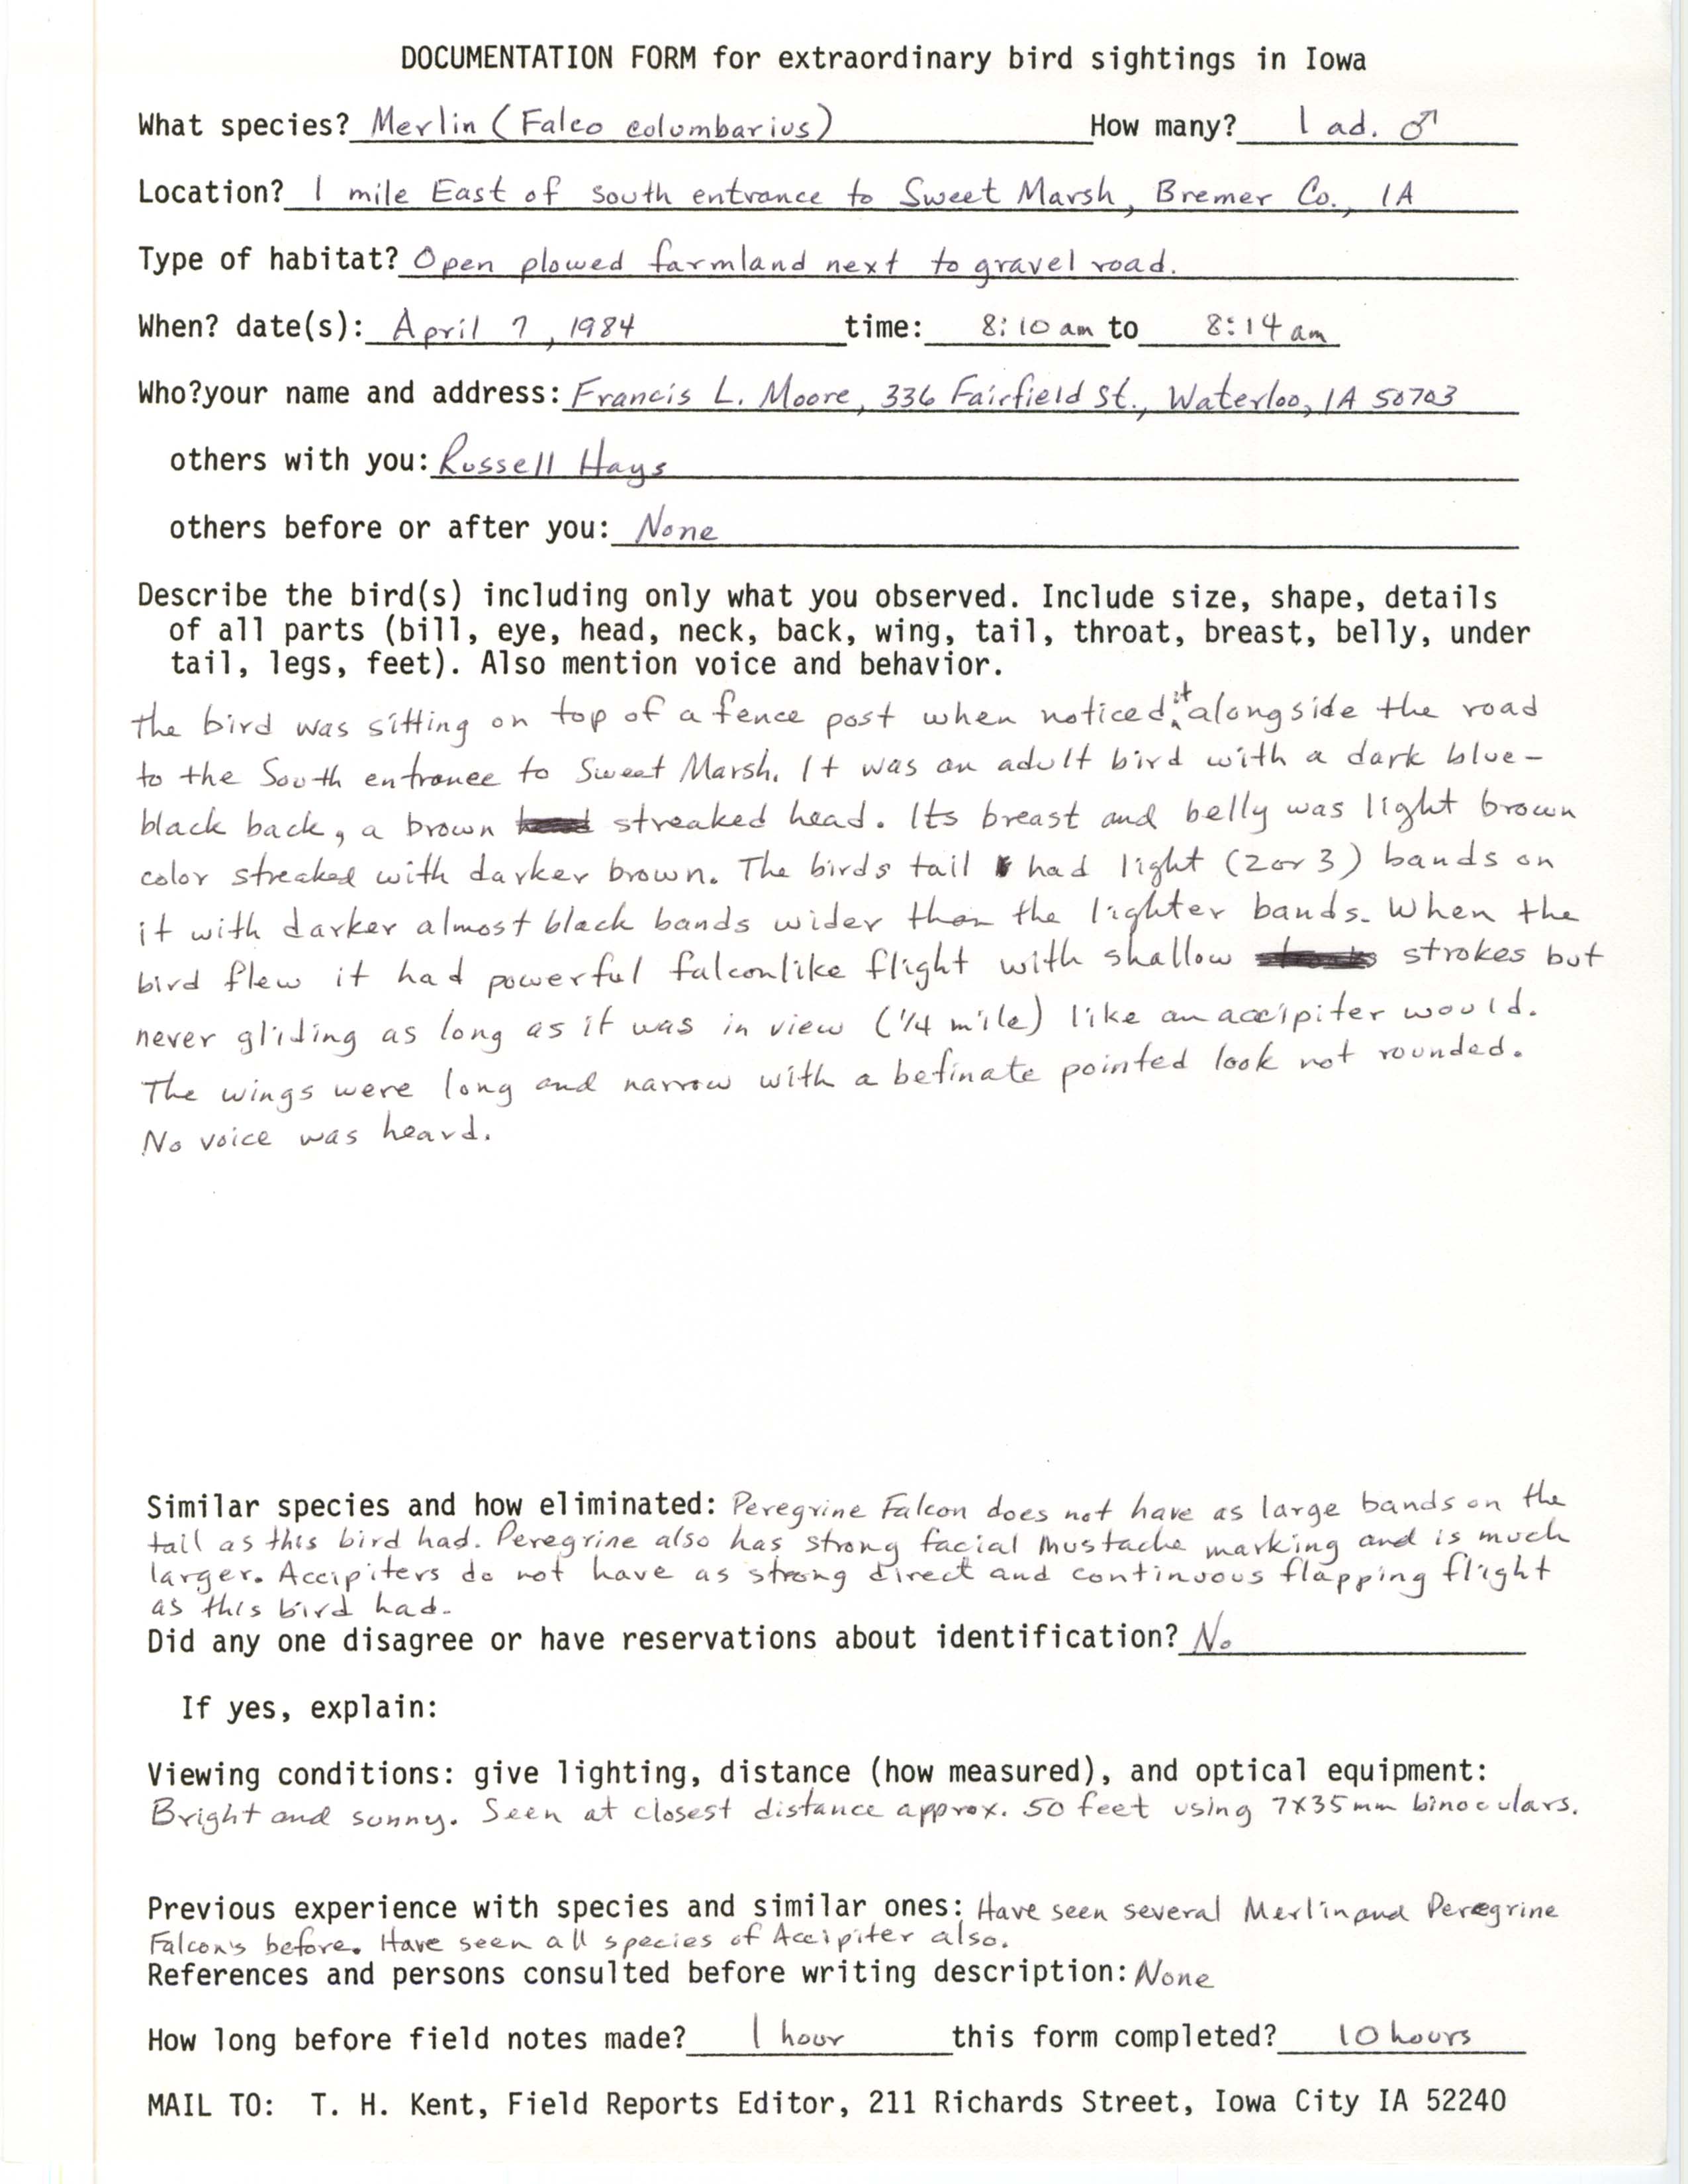 Rare bird documentation form for Merlin east of Sweet Marsh, 1984